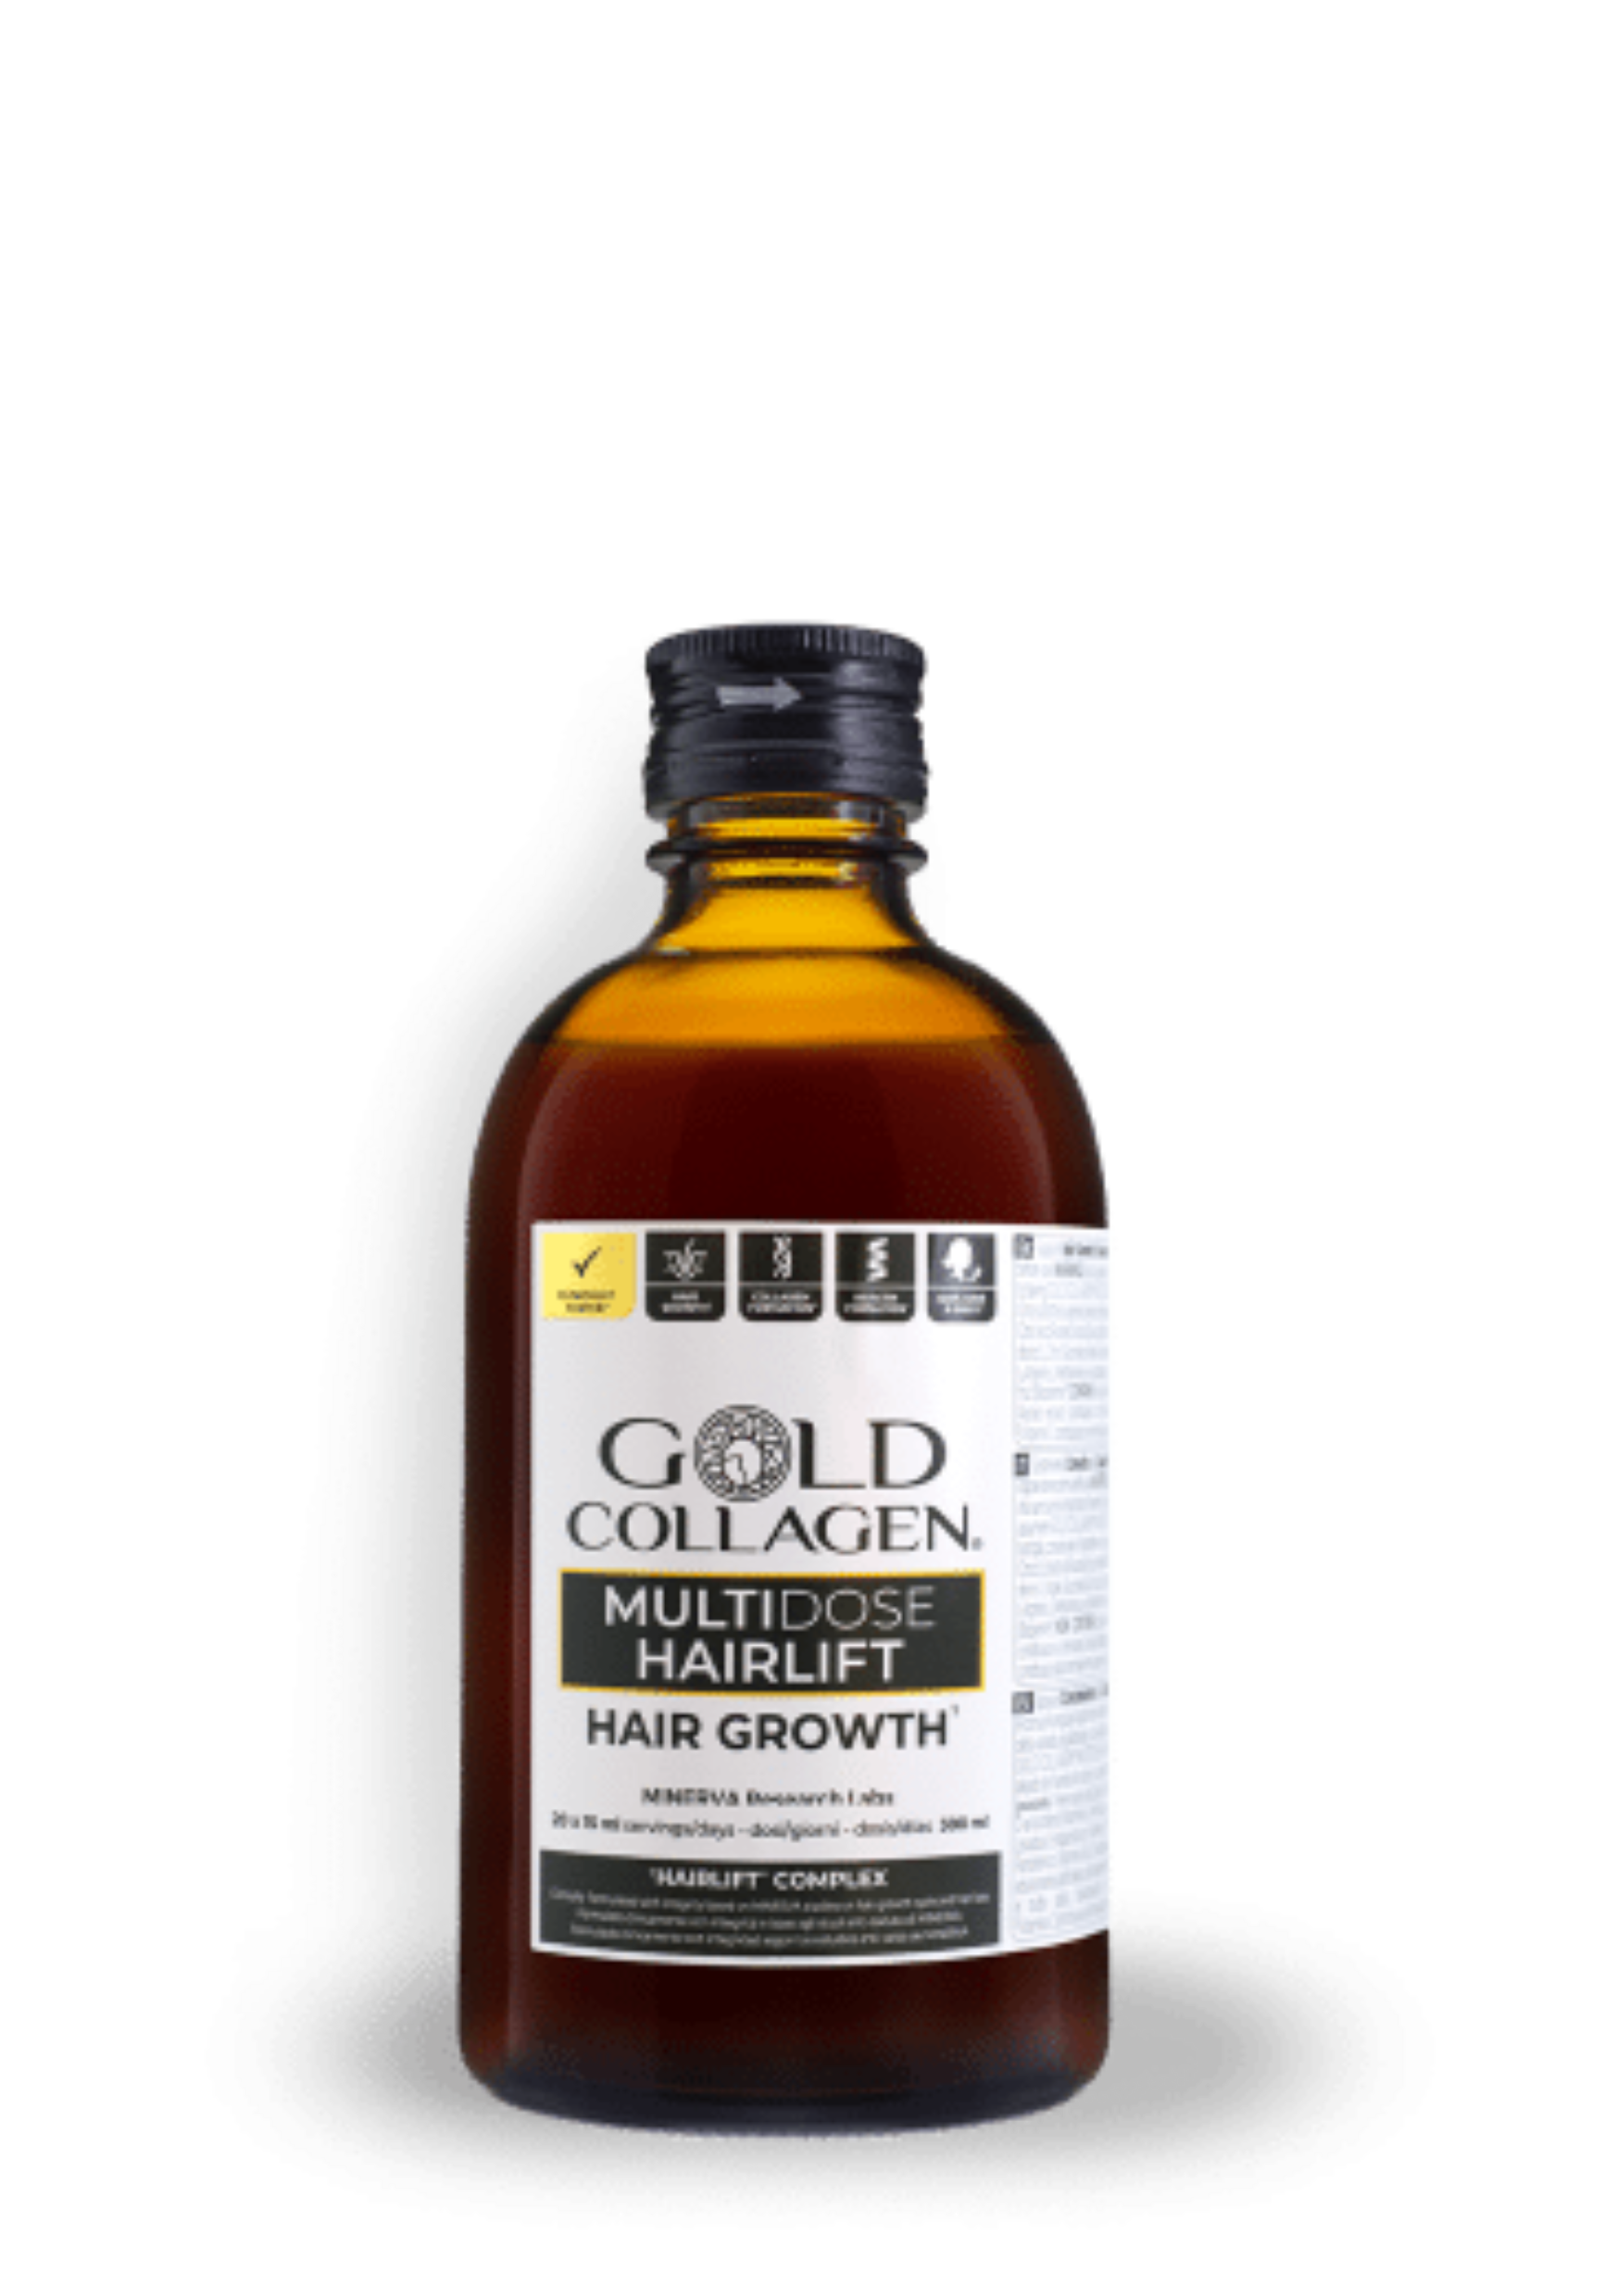 Gold Collagen® Multidose Hairlift